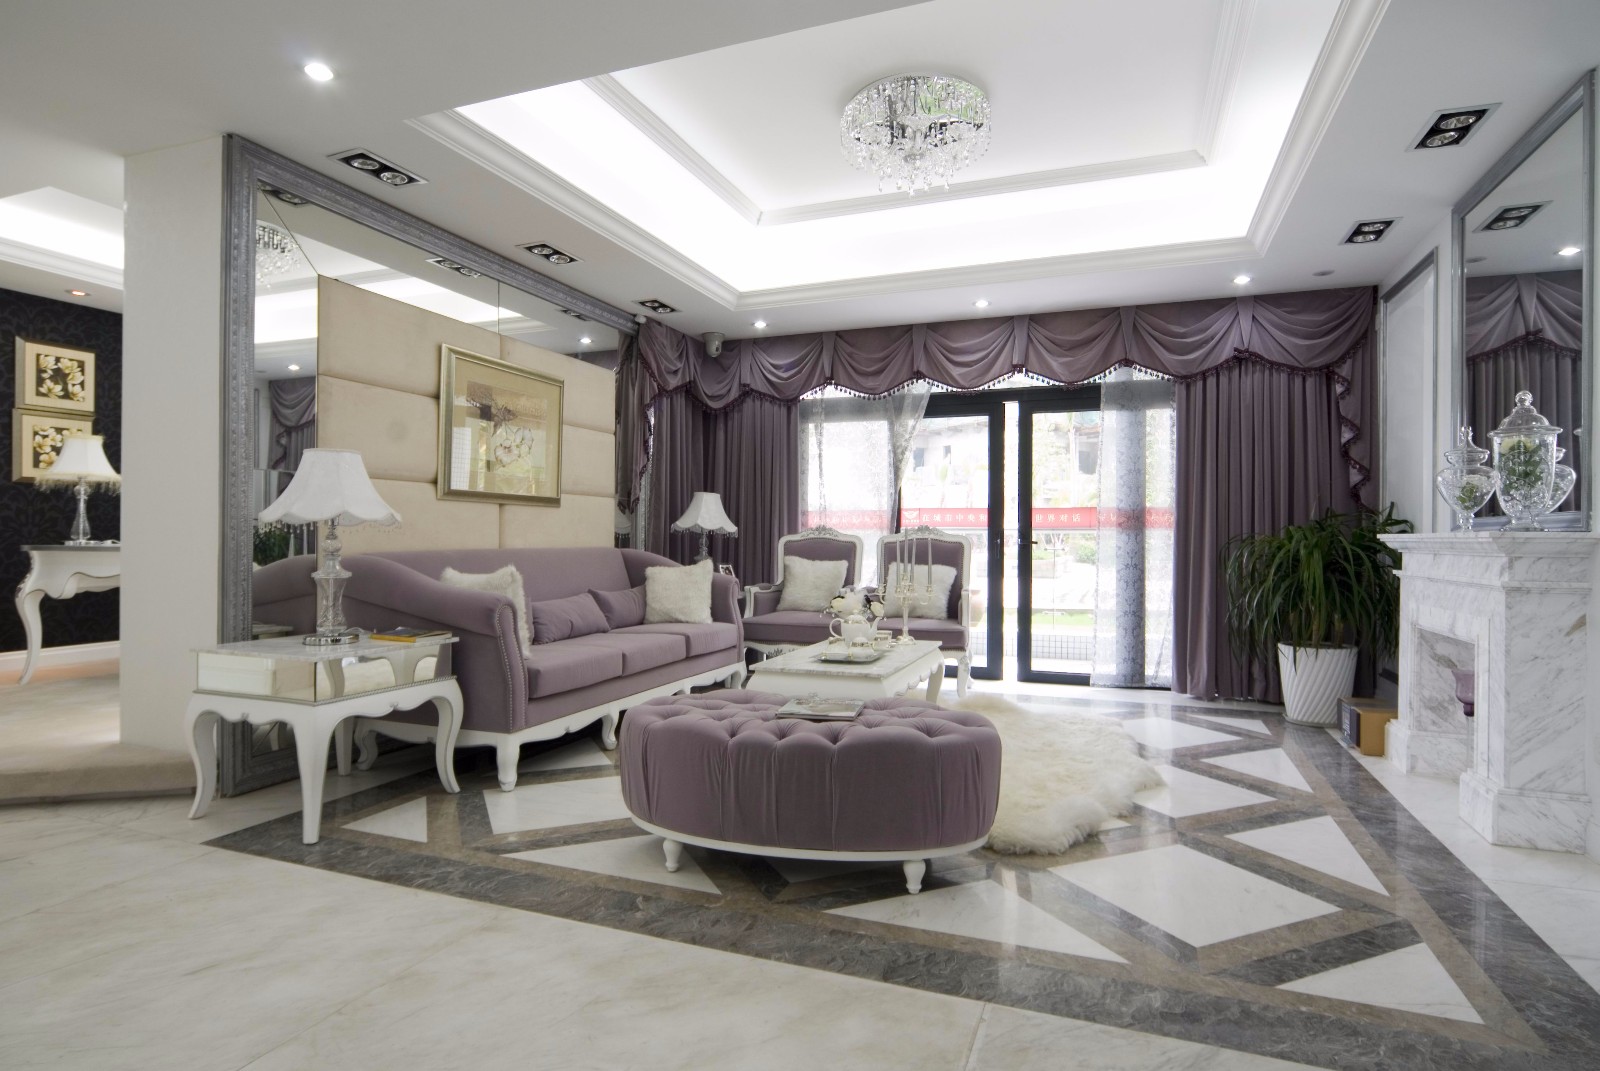 四房装修,140平米以上装修,20万以上装修,客厅,简欧风格,窗帘,沙发,紫色